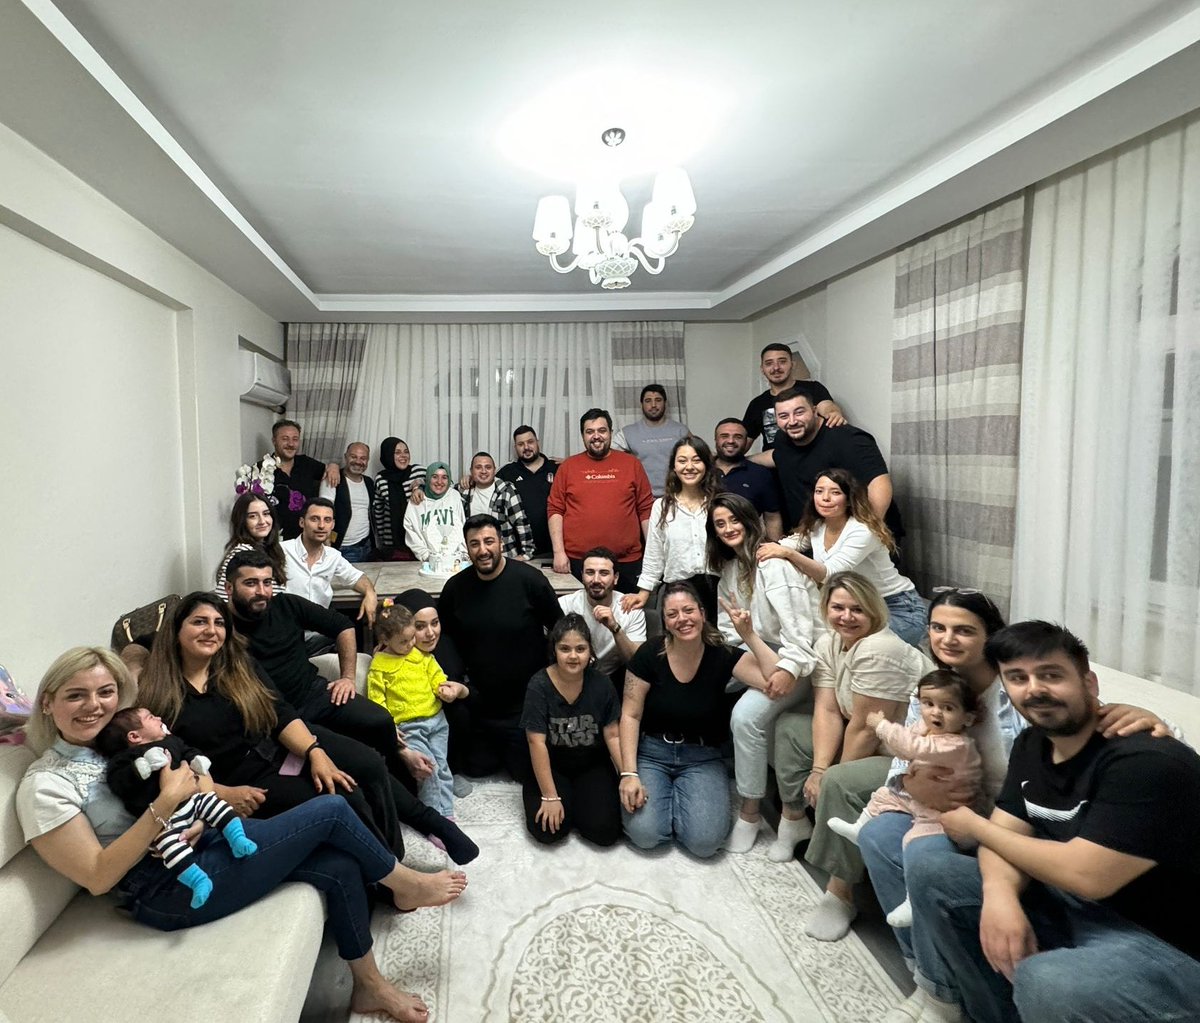 vicdan family

Beşiktaş çArşı